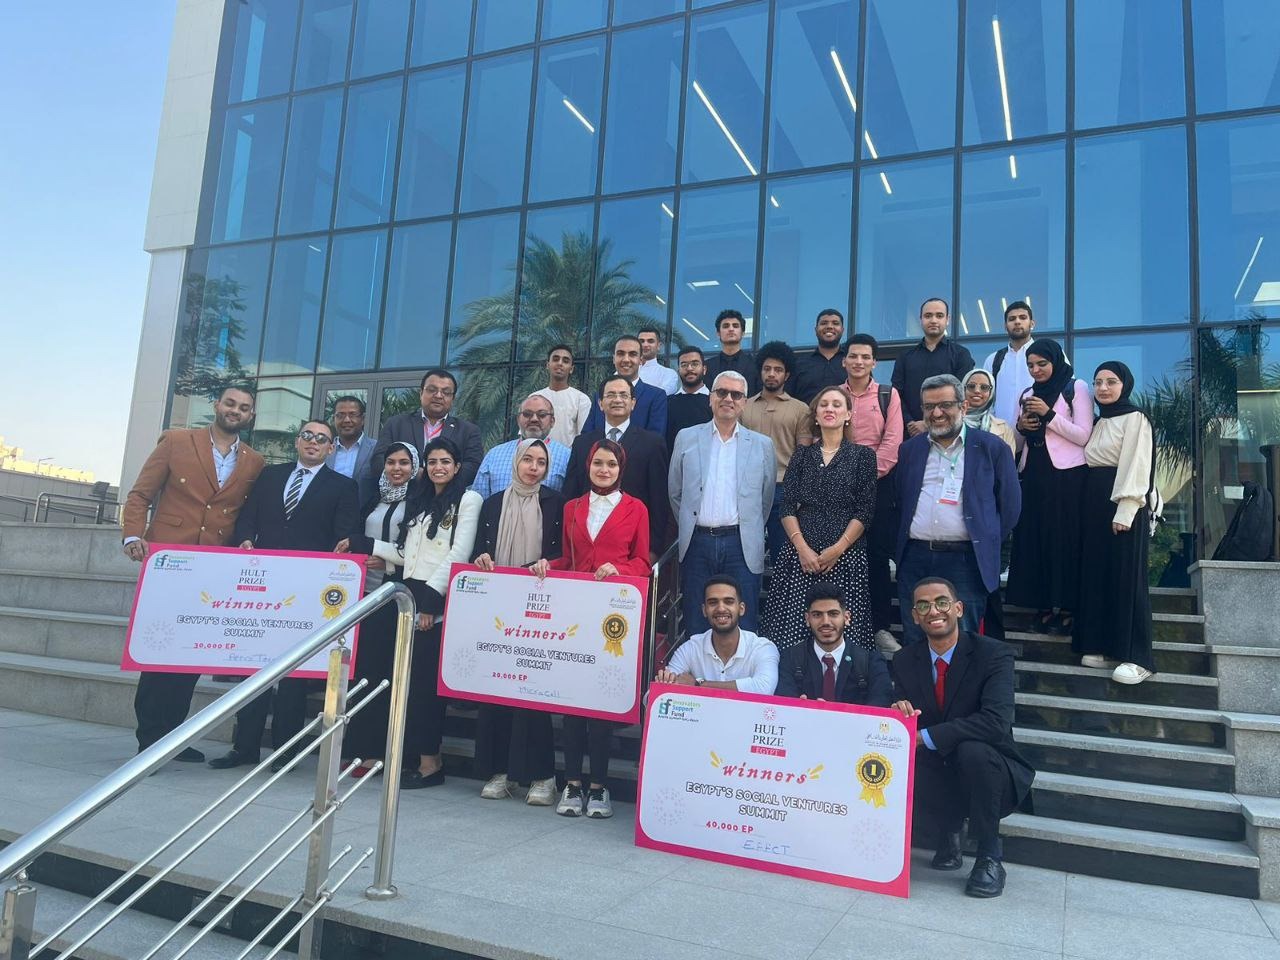 إعلان نتائج مسابقة "قمة مصر للمشاريع الاستثمارية المجتمعية" بالتعاون بين صندوق رعاية المبتكرين والنوابغ ومسابقة Hult Prize العالمية